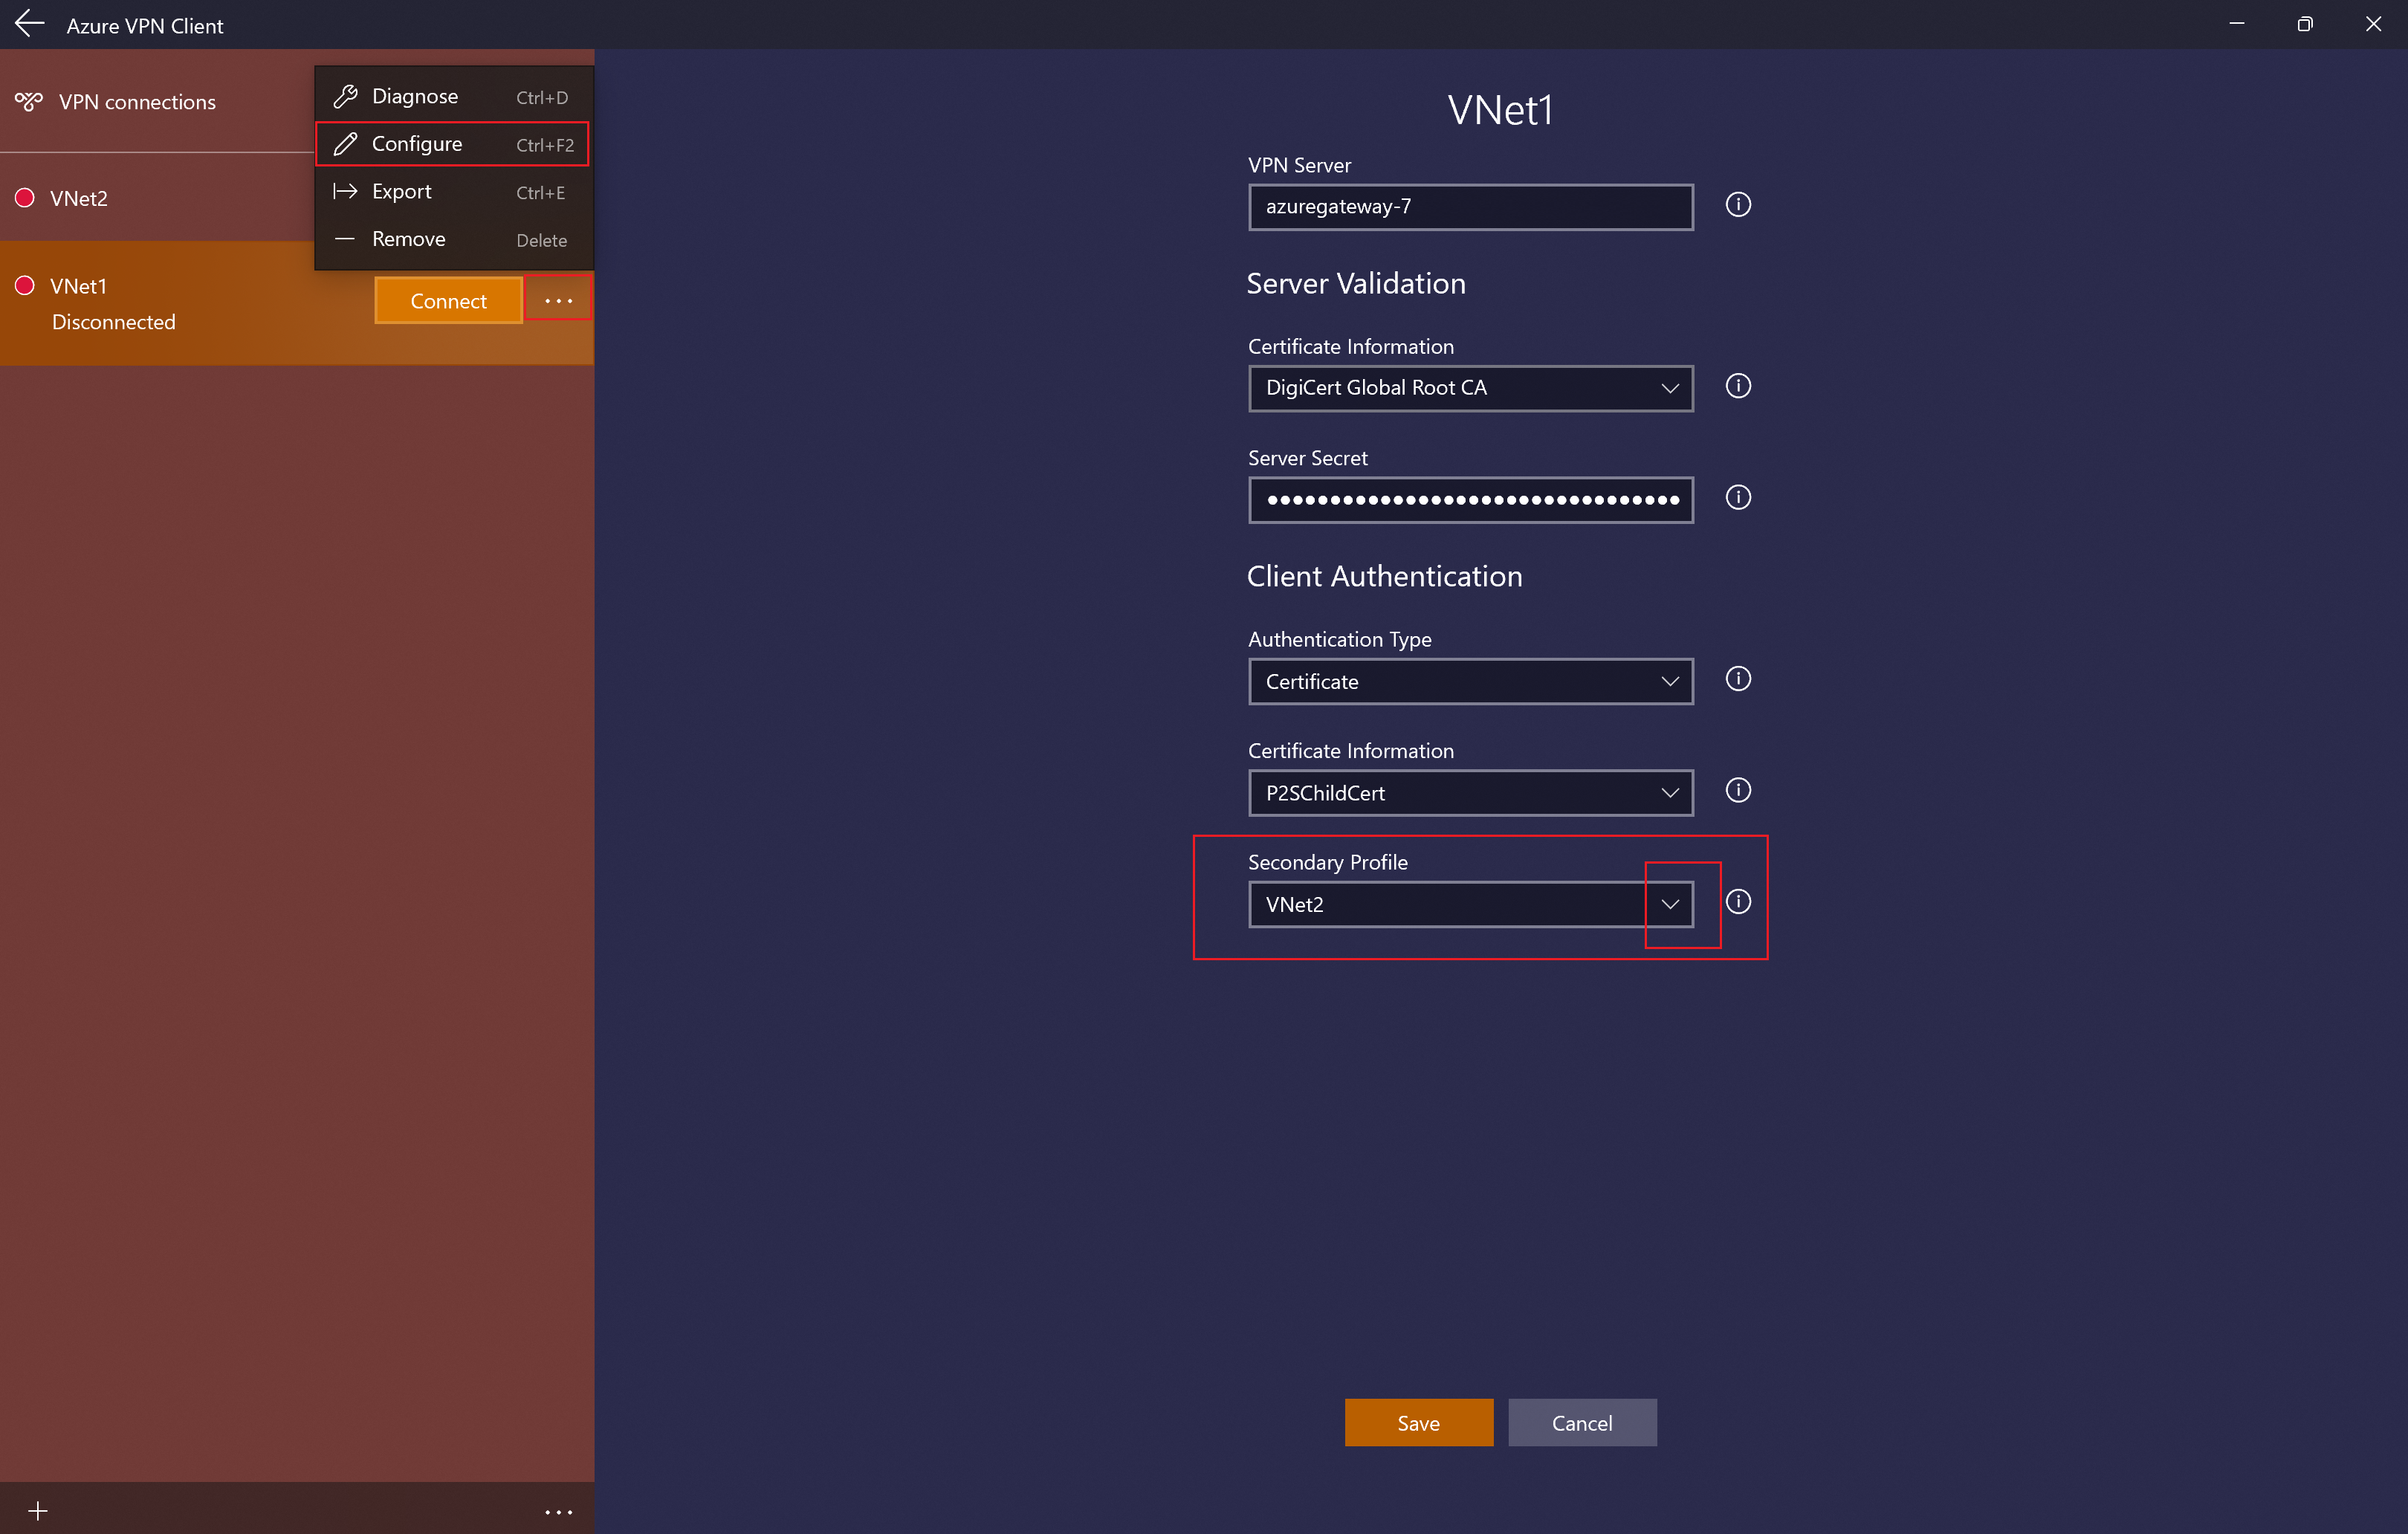 Captura de tela mostrando a página de configuração do perfil do cliente VPN do Azure com perfil secundário.